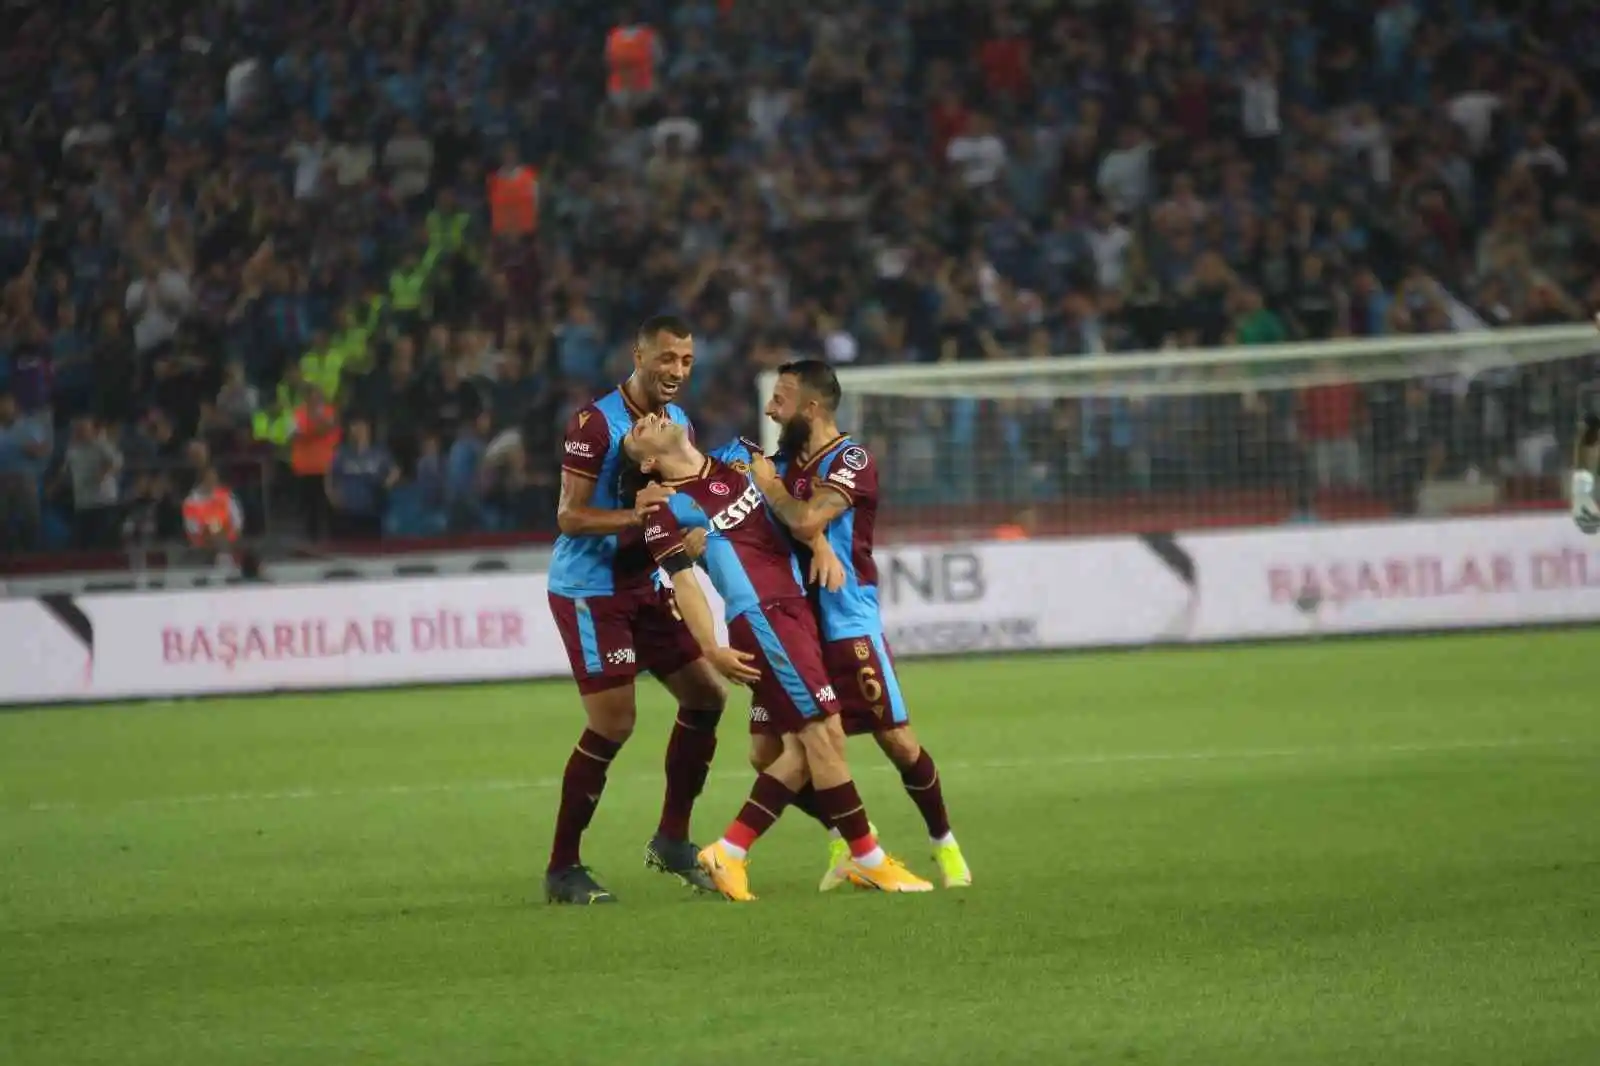 Spor Toto Süper Lig: Trabzonspor: 1 - Hatayspor: 0 (Maç sonucu)
